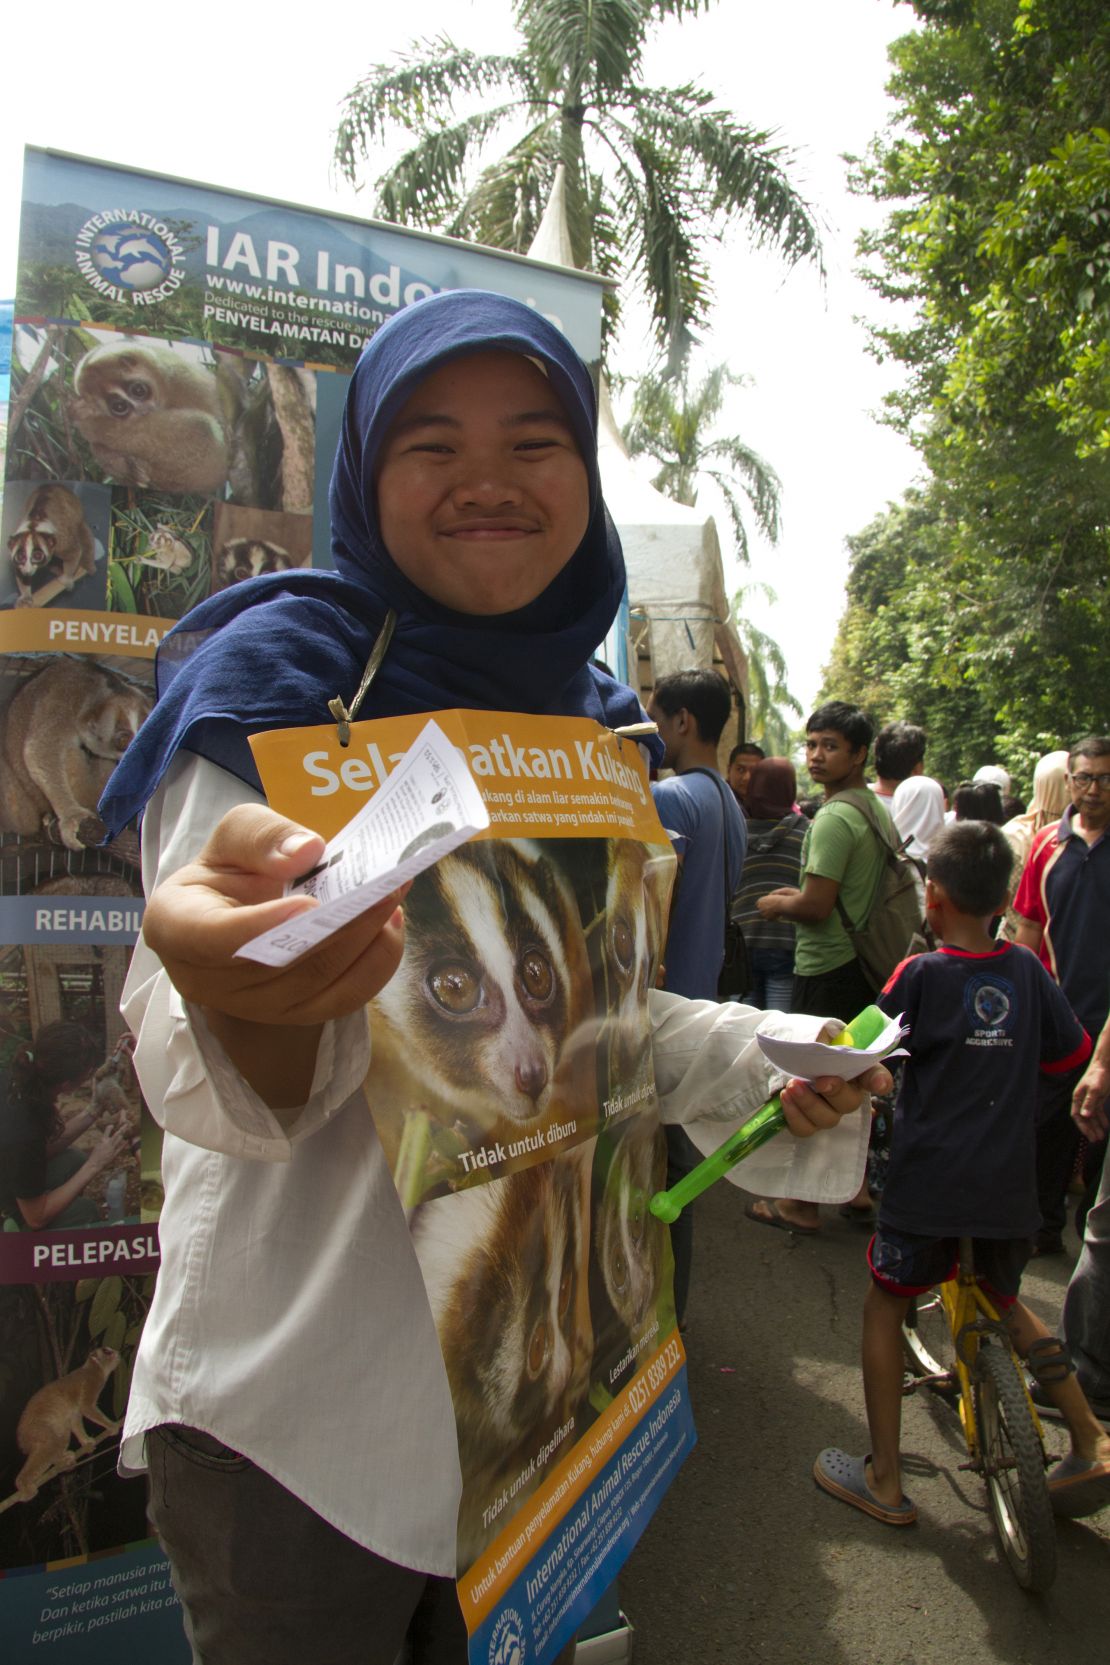 Outreach programme in Bogor